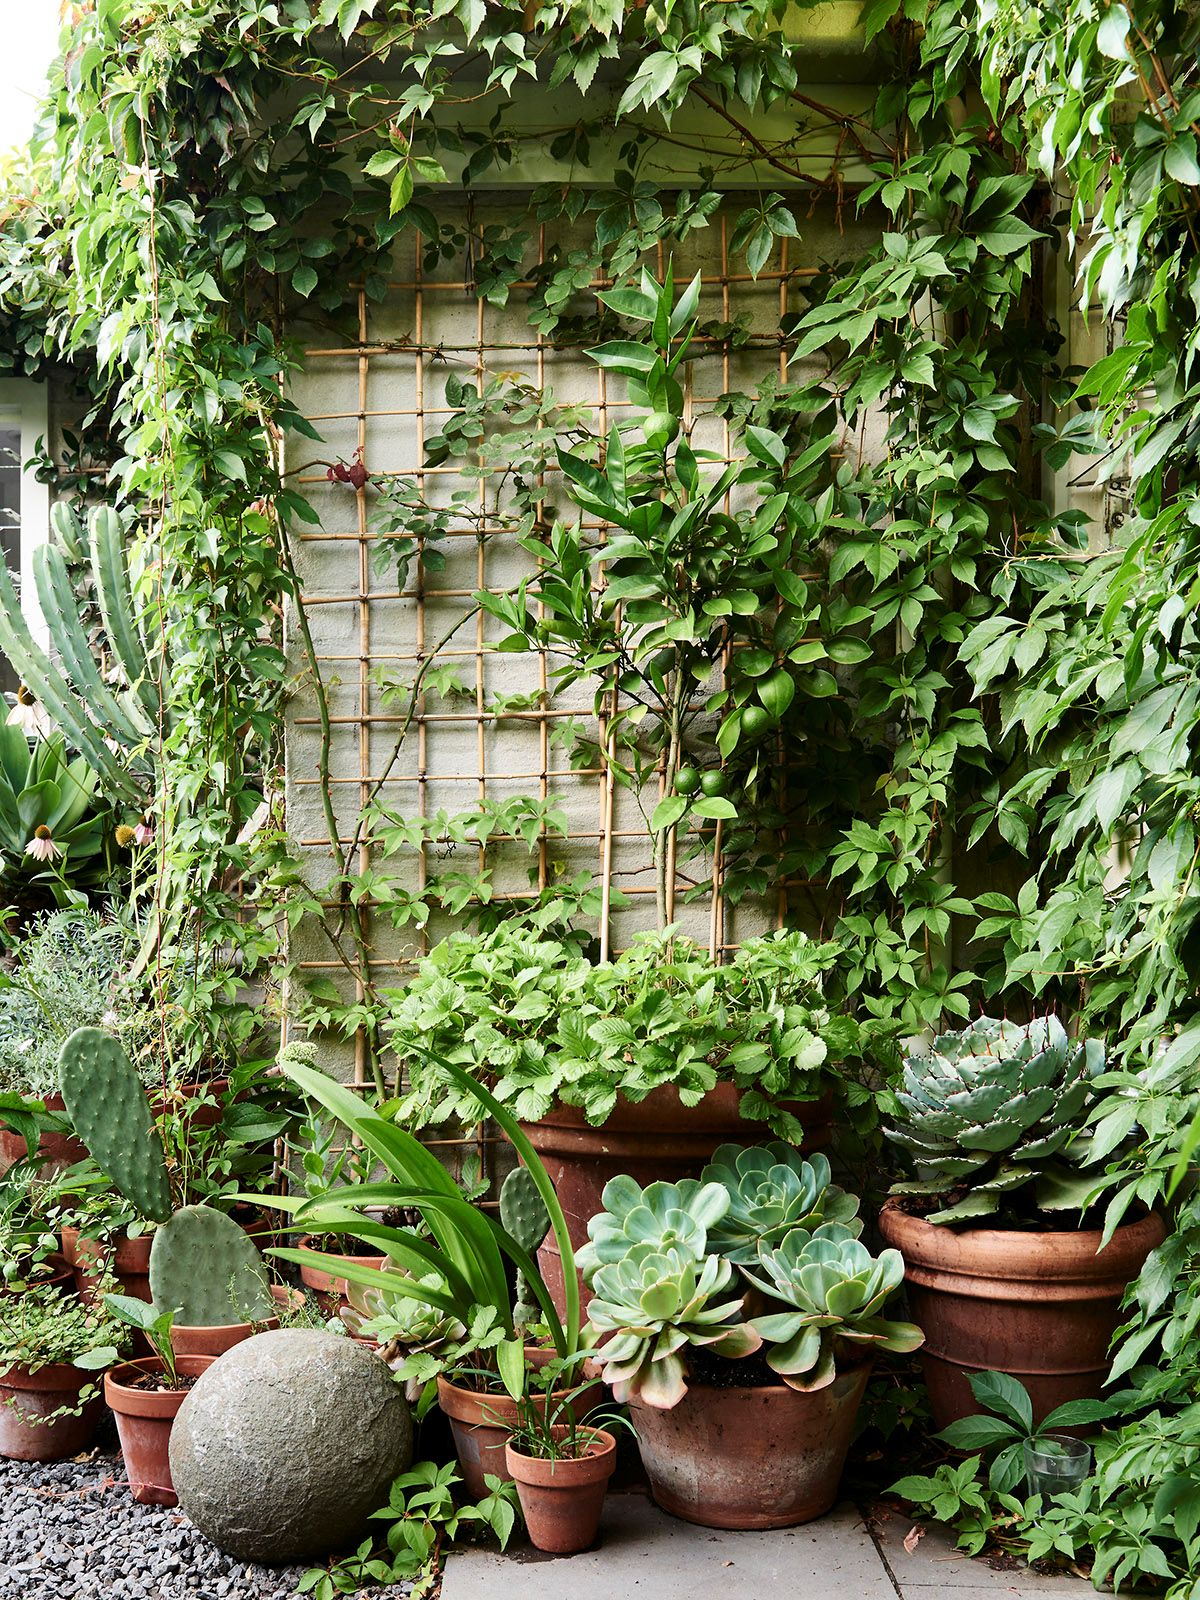 Diseño De Jardines: Un Jardín Pequeño Y Frondoso De 24 Metros² destiné Jardines Con Plantas Aromaticas